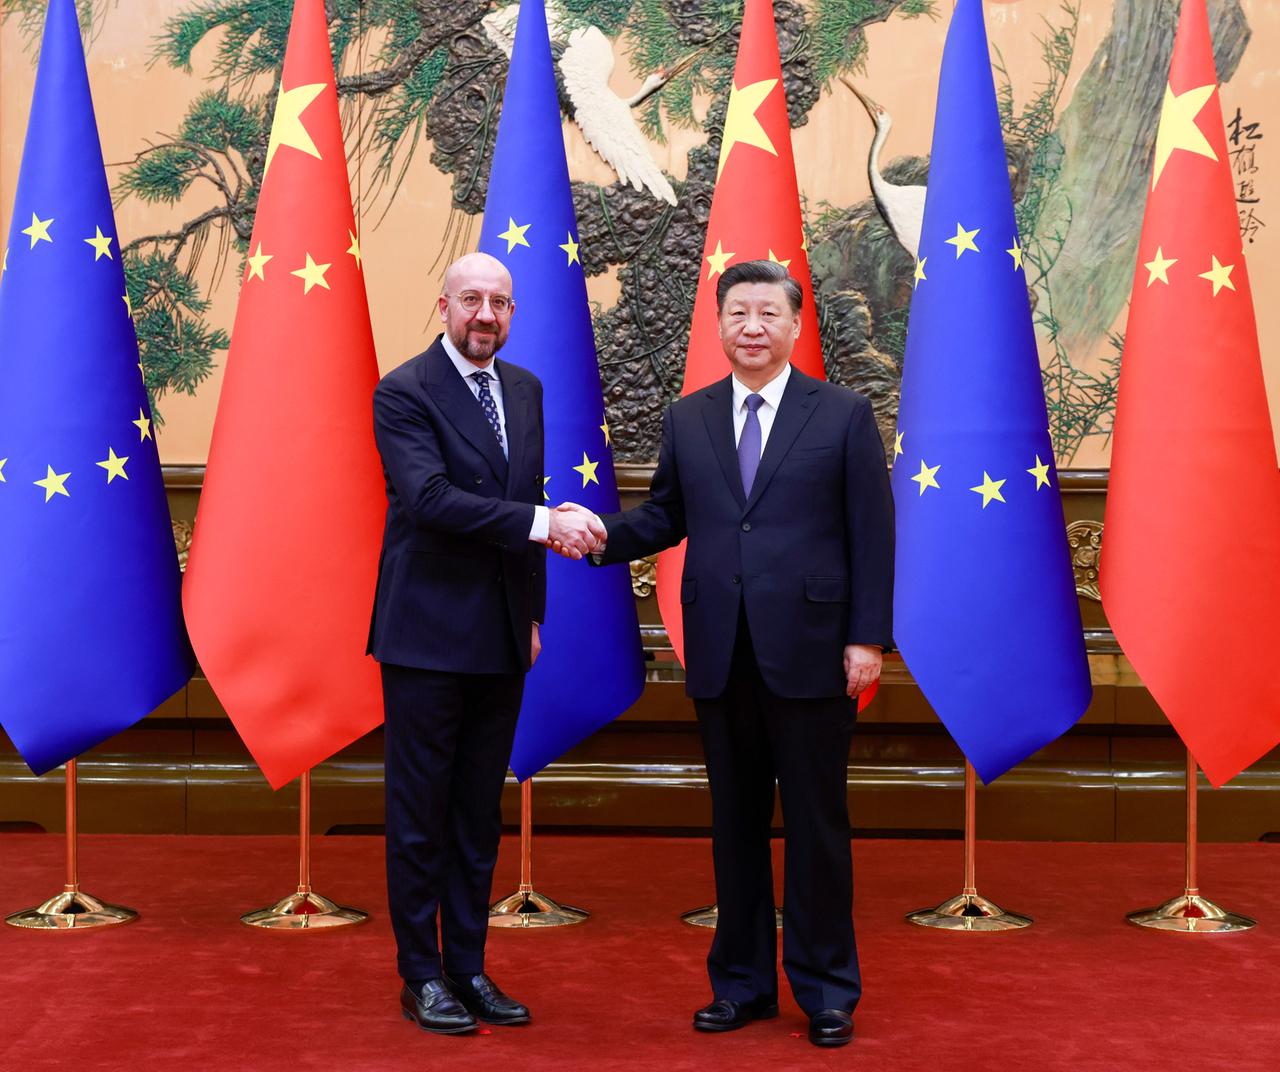 Der Präsident des Europäischen Rates, Michel, und der chinesische Präsident Xi Jinping schütteln sich die Hand. Hinter ihnen jeweils drei EU- und chinesische Flaggen.